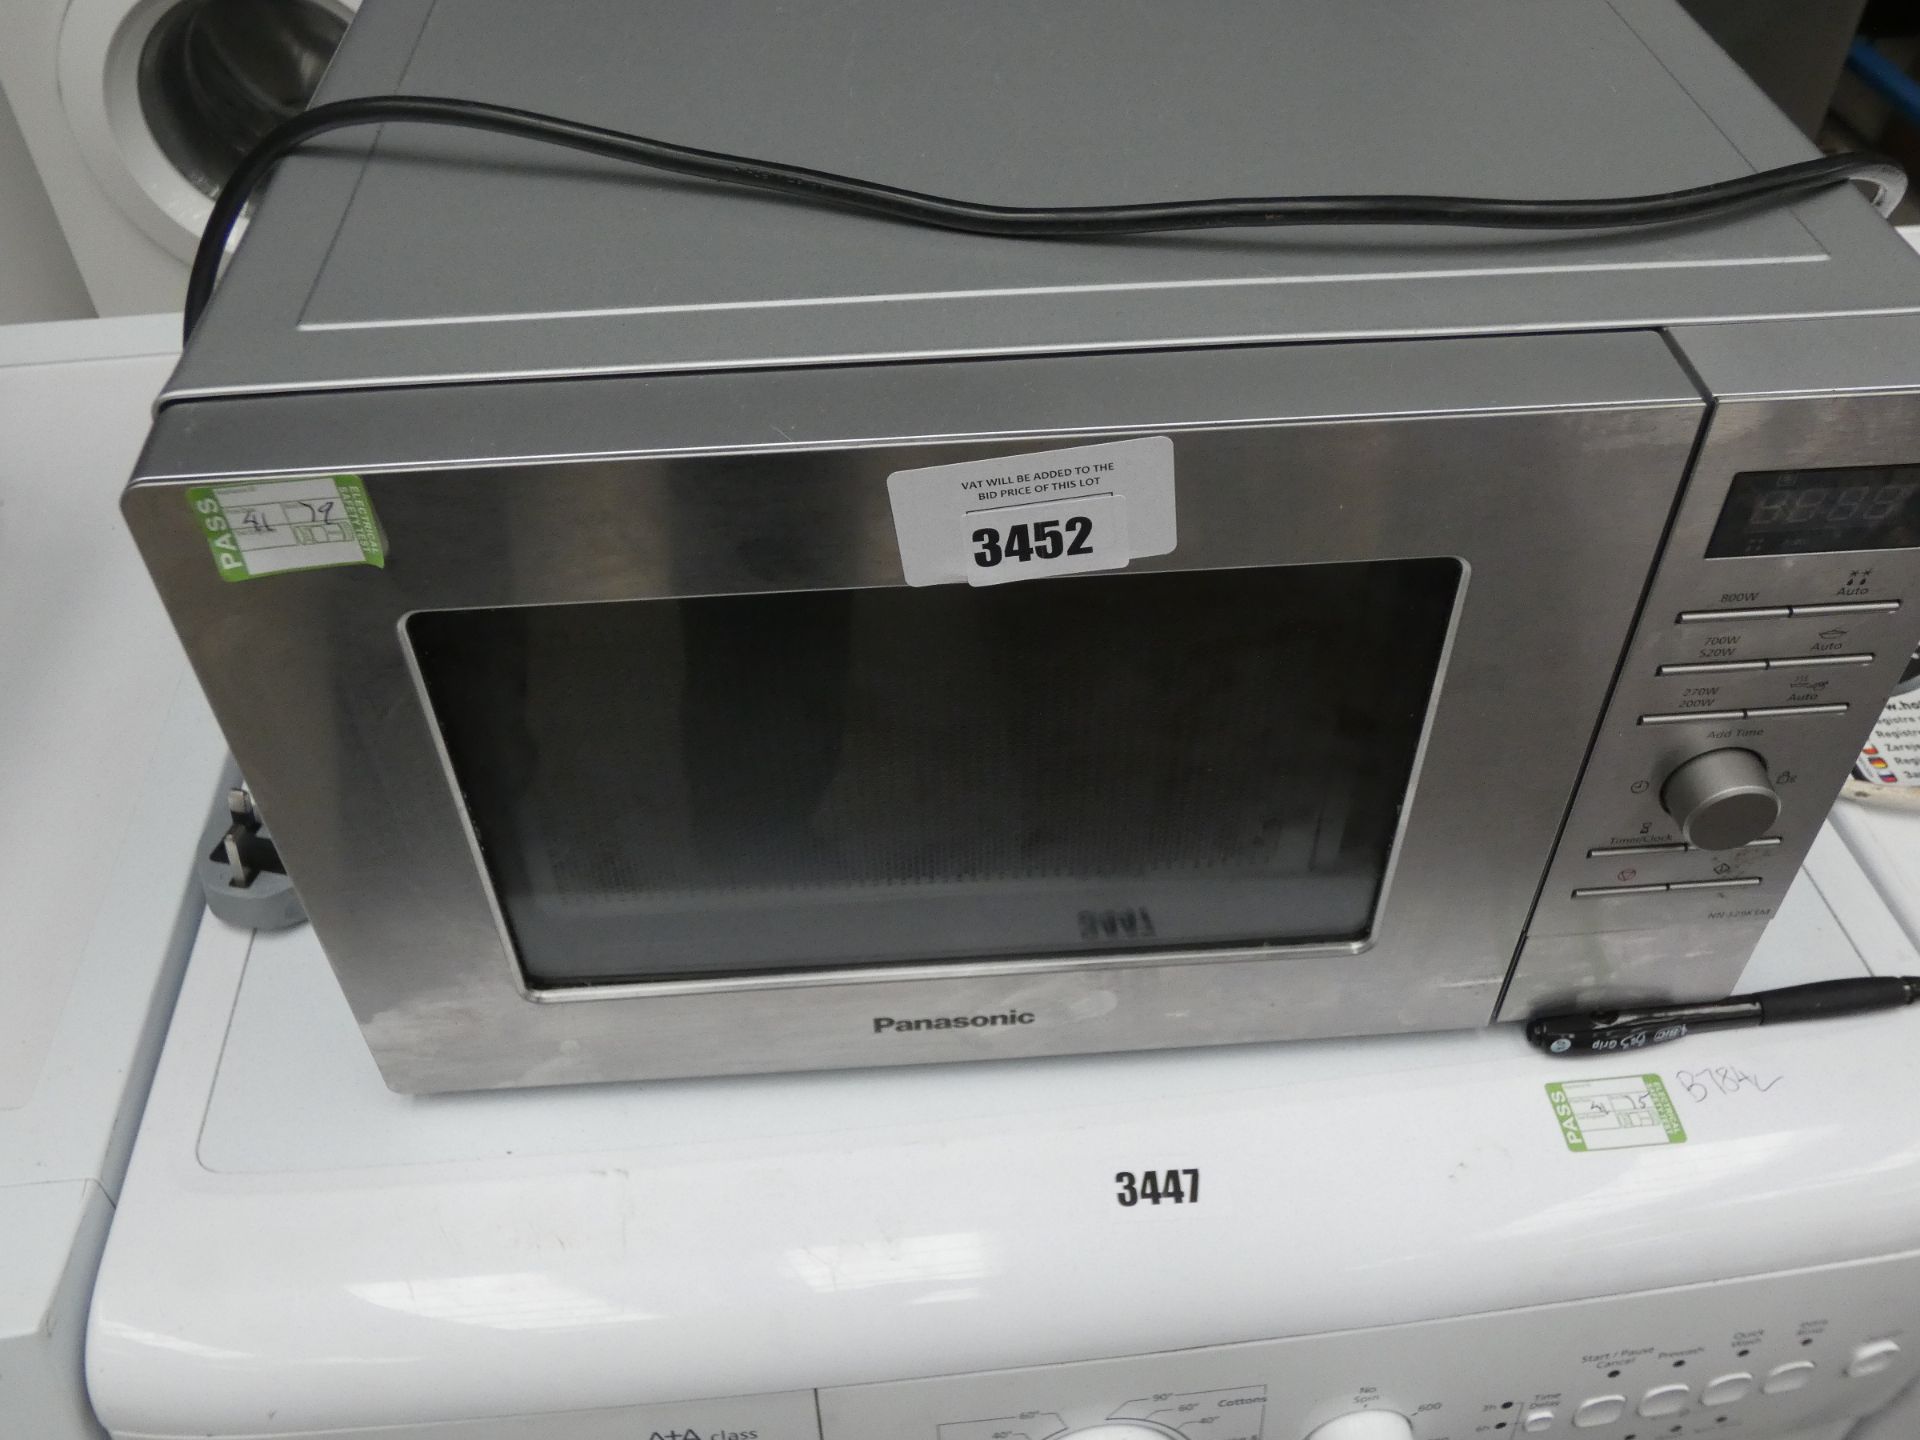 (79) Panasonic microwave